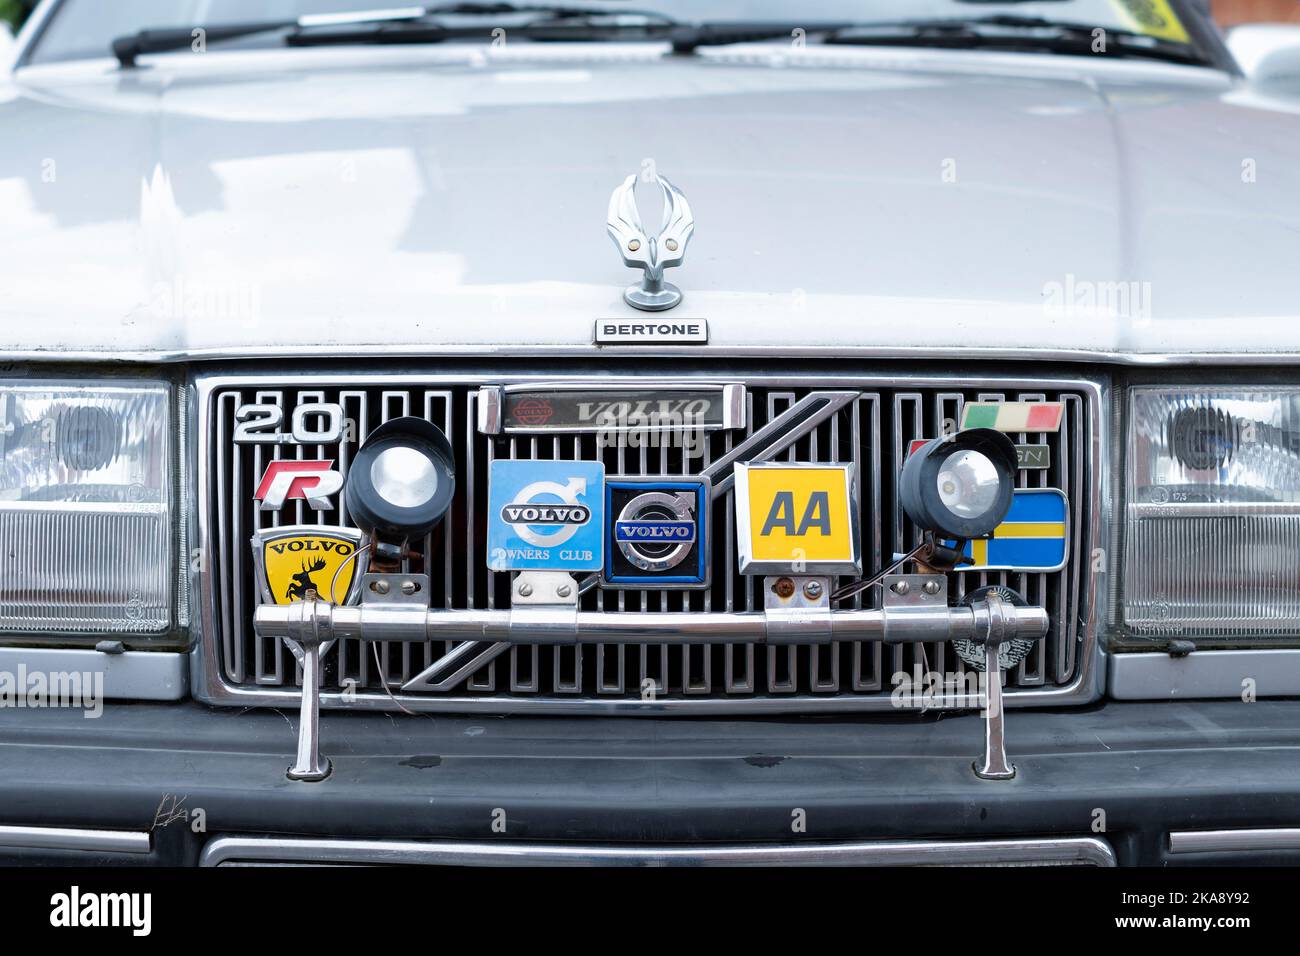 Una parrilla delantera clásica de los vehículos de motor Volvo Bertone con una barra de la insignia que muestra insignias retro metal de la membresía del club de los dueños AA y de Volvo. Foto de stock